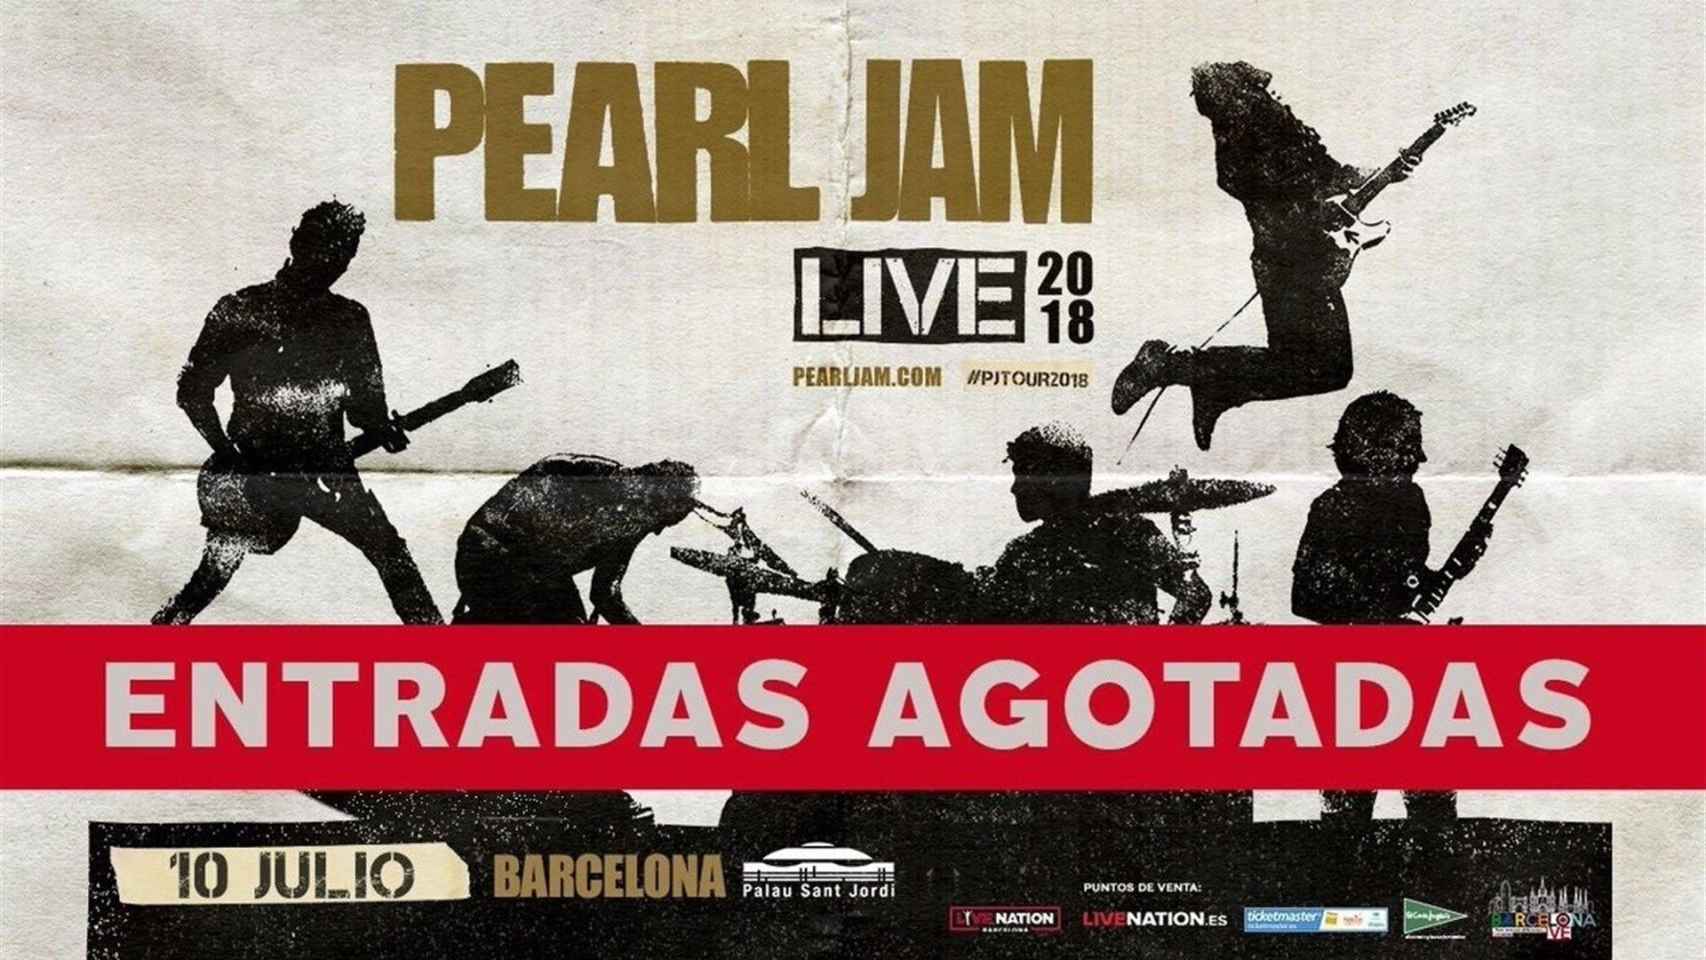 La banda de Seattle Pearl Jamp ha agotado sus entradas para el concierto de Barcelona en unas horas / EUROPA PRESS